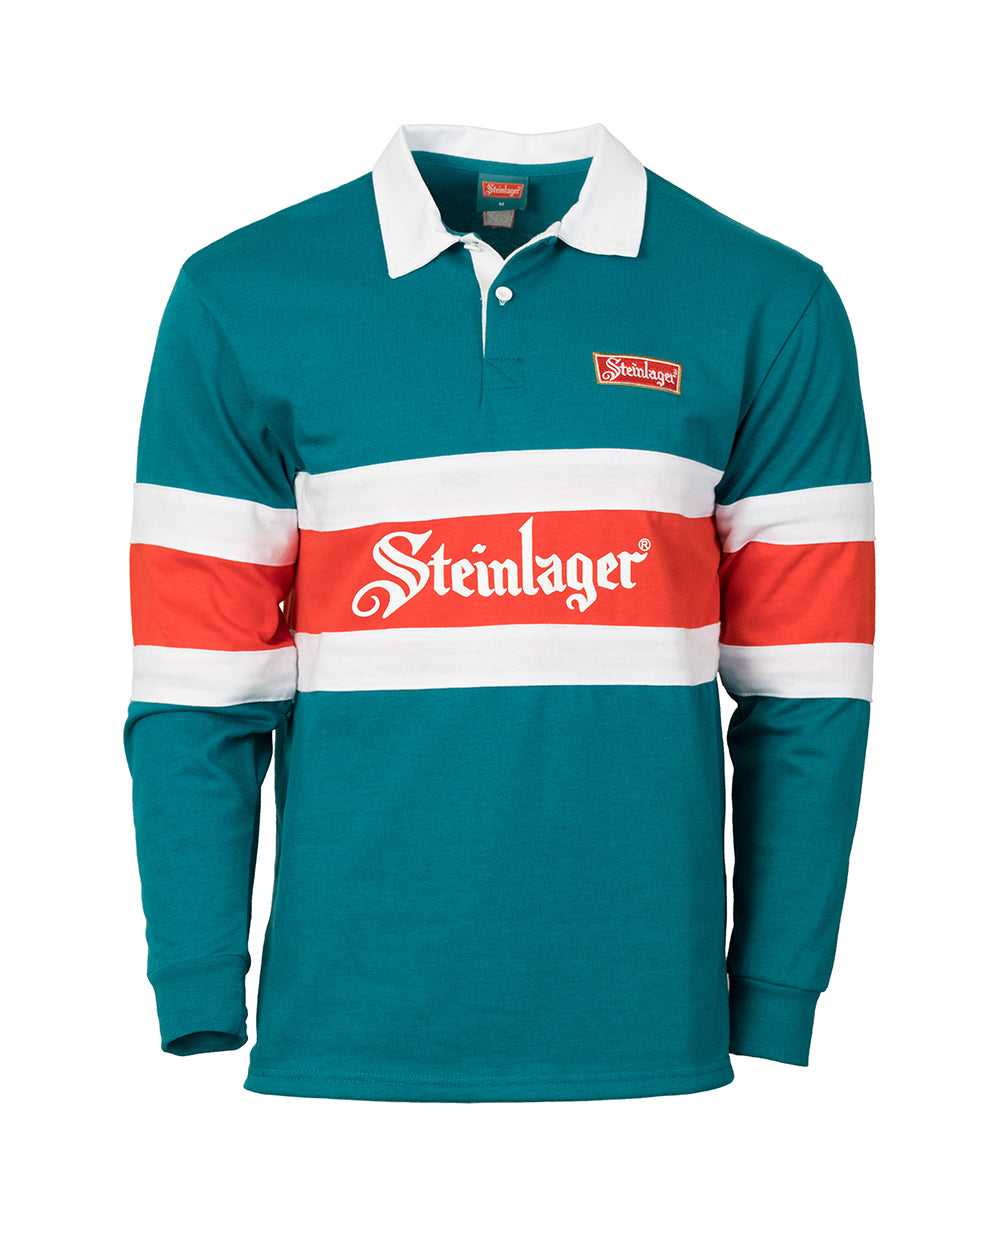 Steinlager Retro Men's Rugby Jersey - Wear It Proud NZL